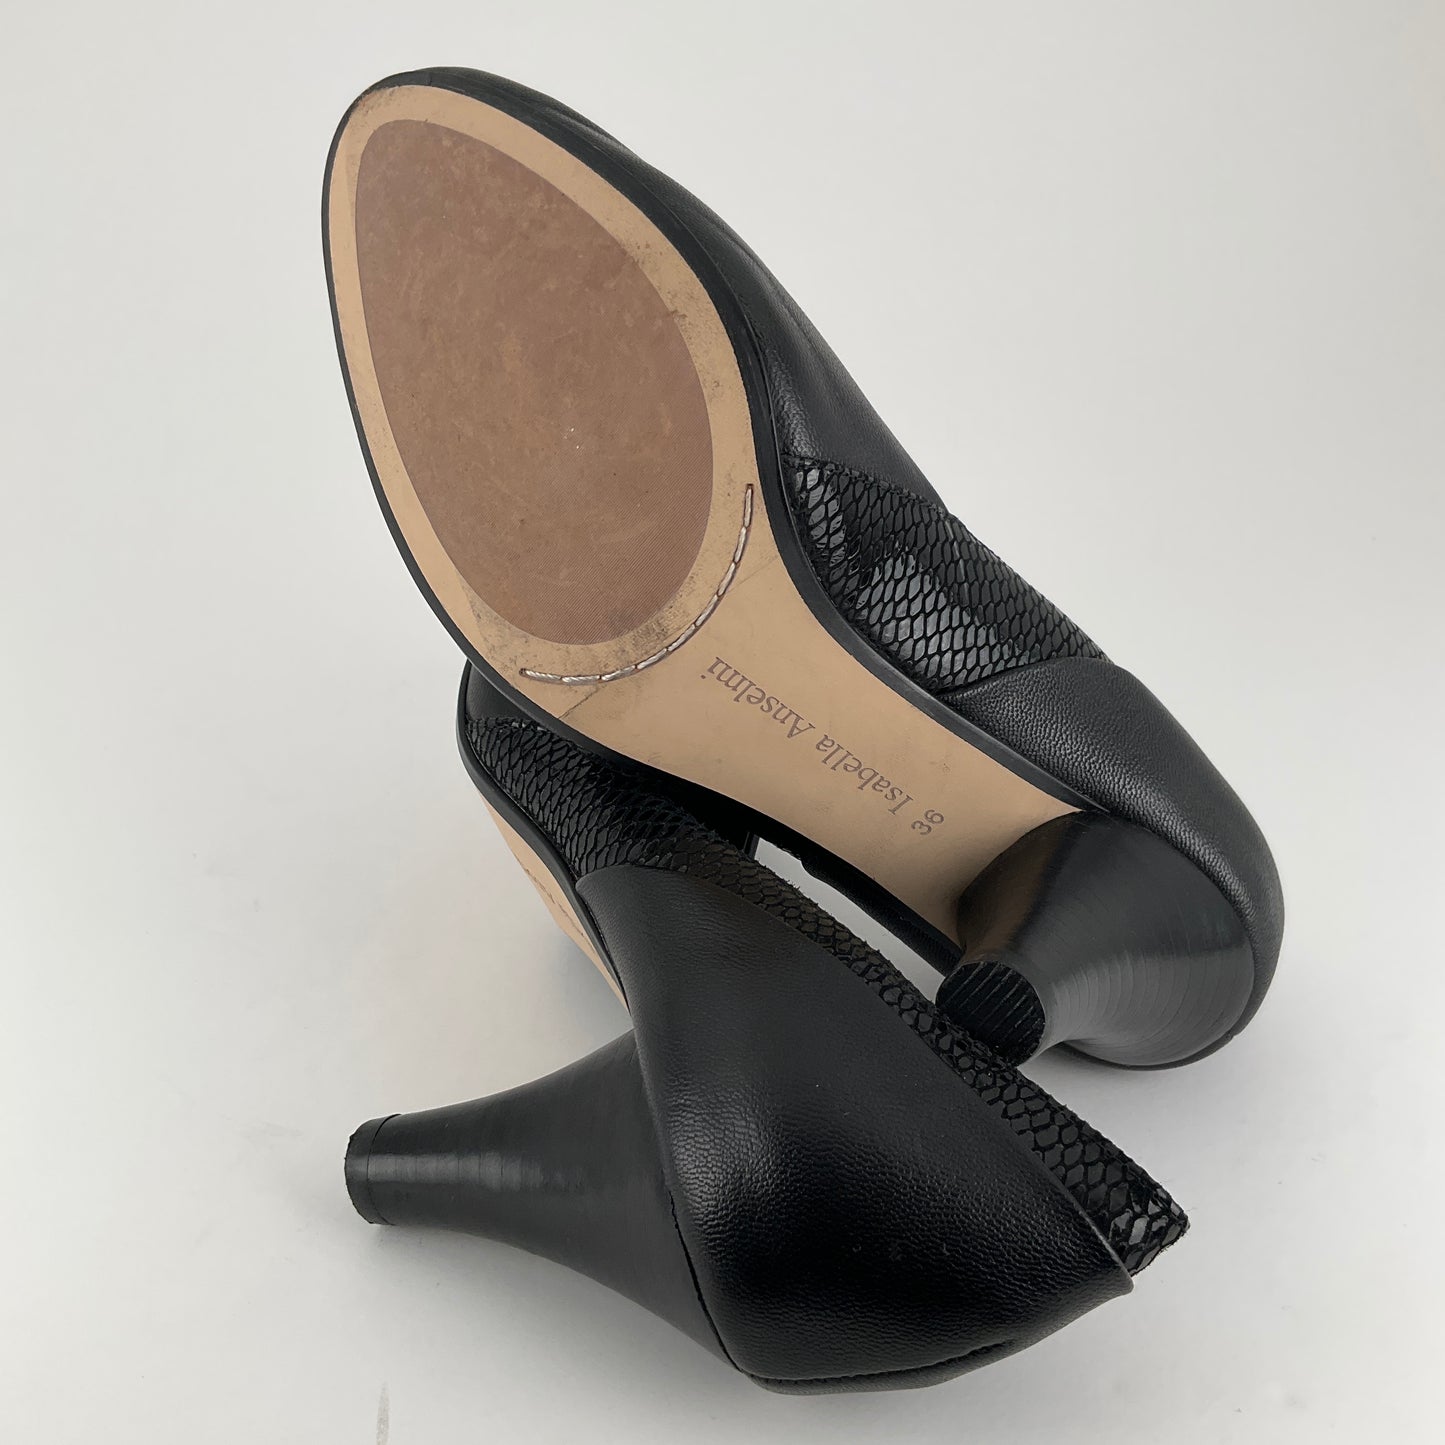 Isabella Anselmi - Black Heels - Size 36